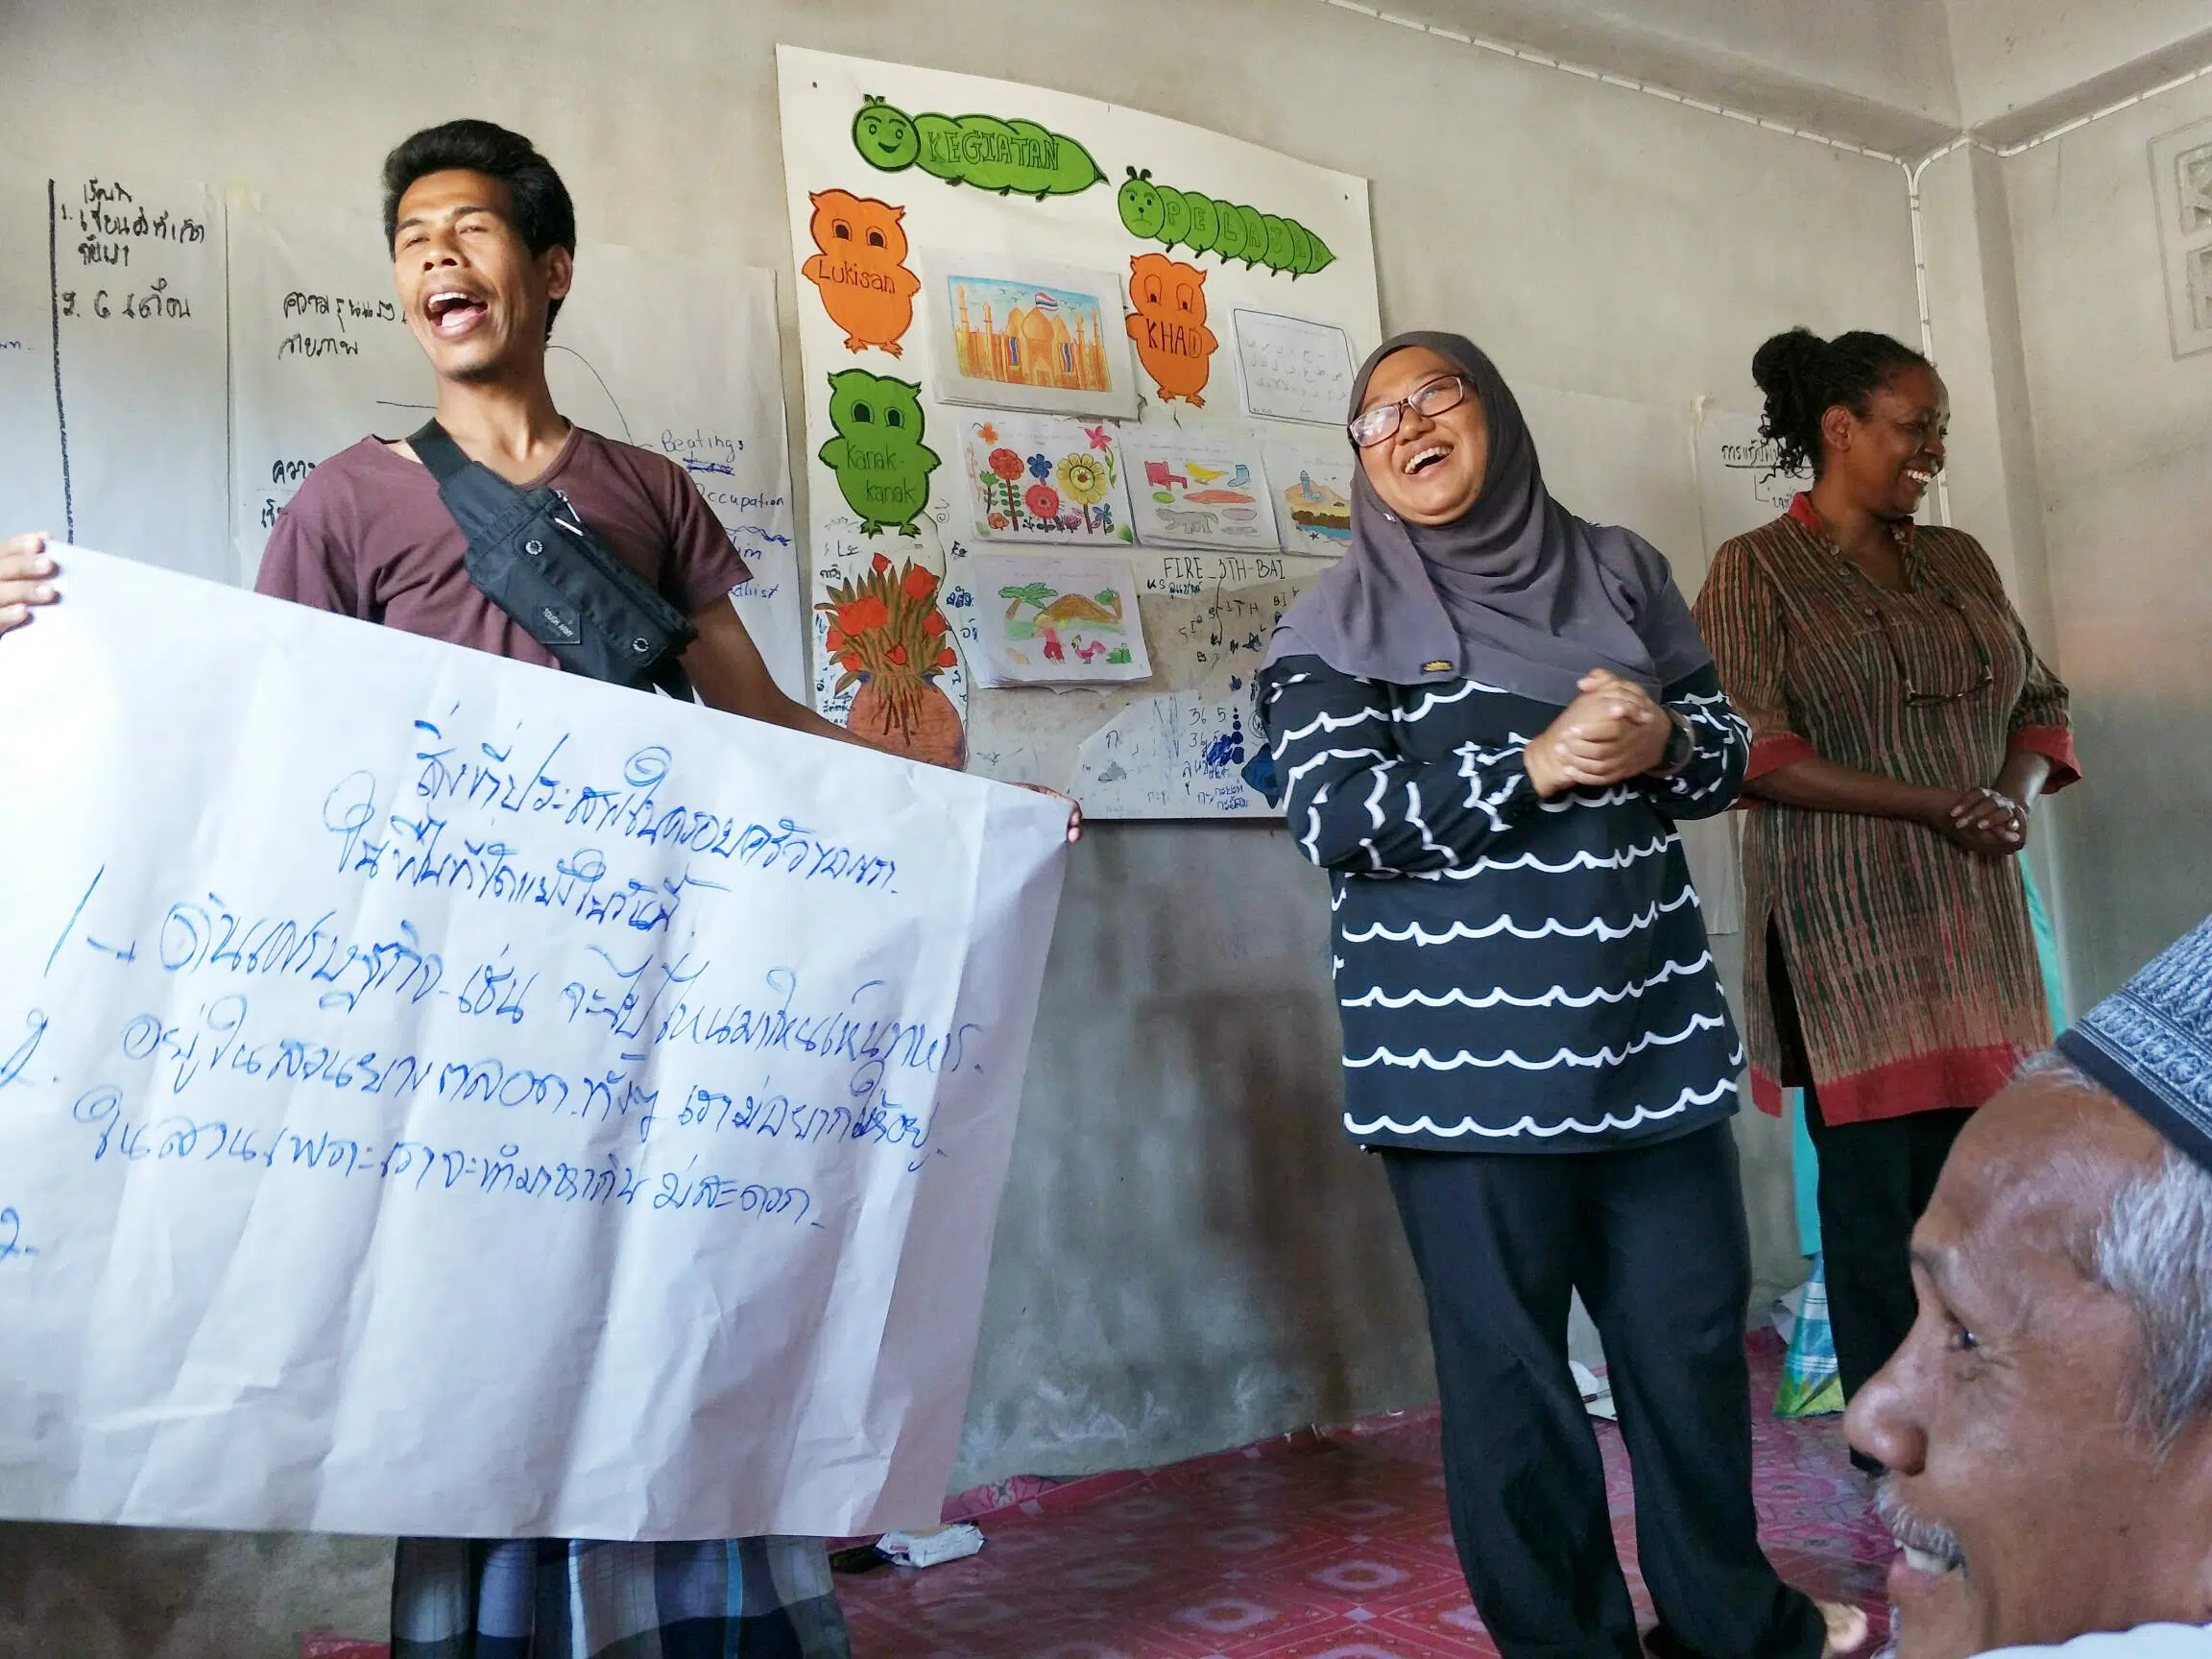 Dos personas cantando y sonriendo sosteniendo un cartel con letras tailandesas durante un entrenamiento en el sur de Tailandia. Personal de NP sonriendo junto a dos personas.